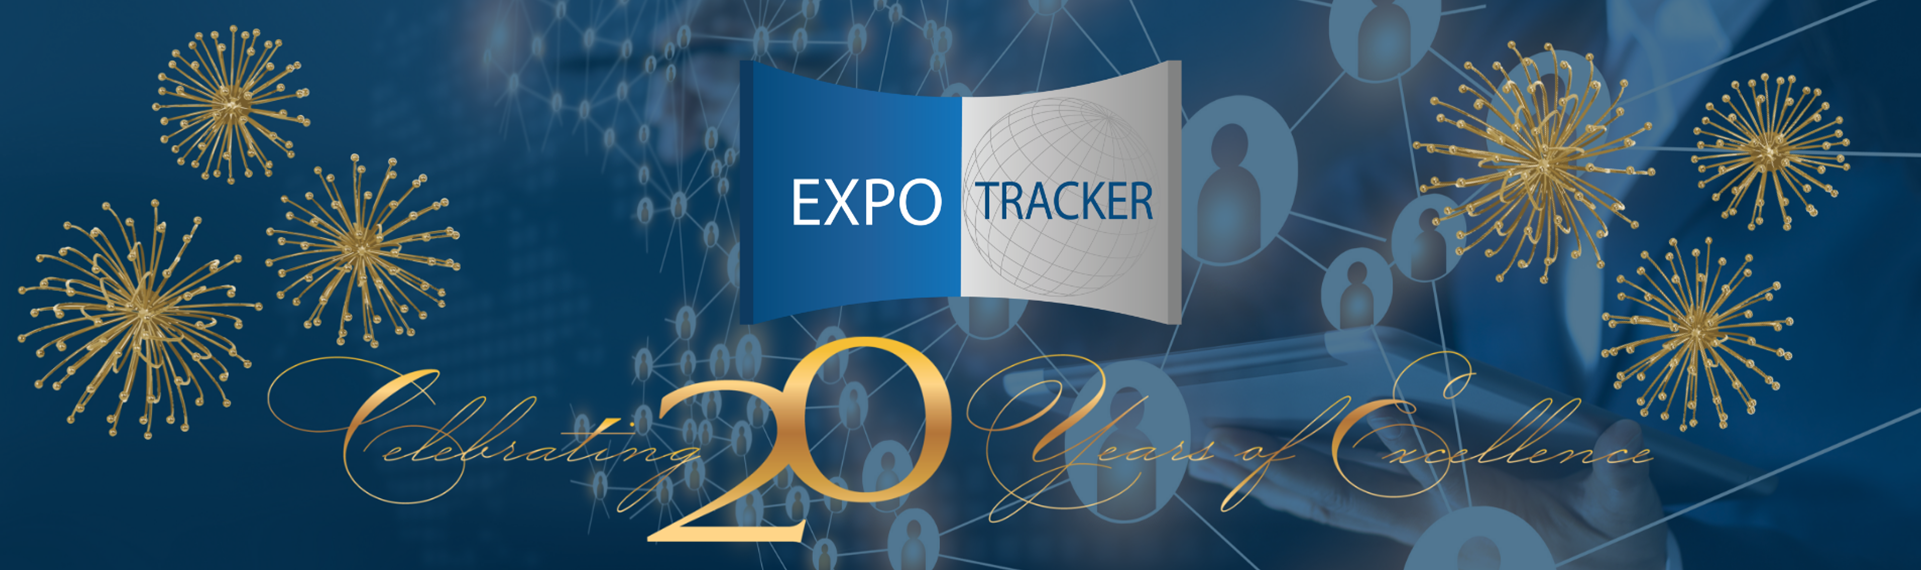 Expo Tracker, LLC